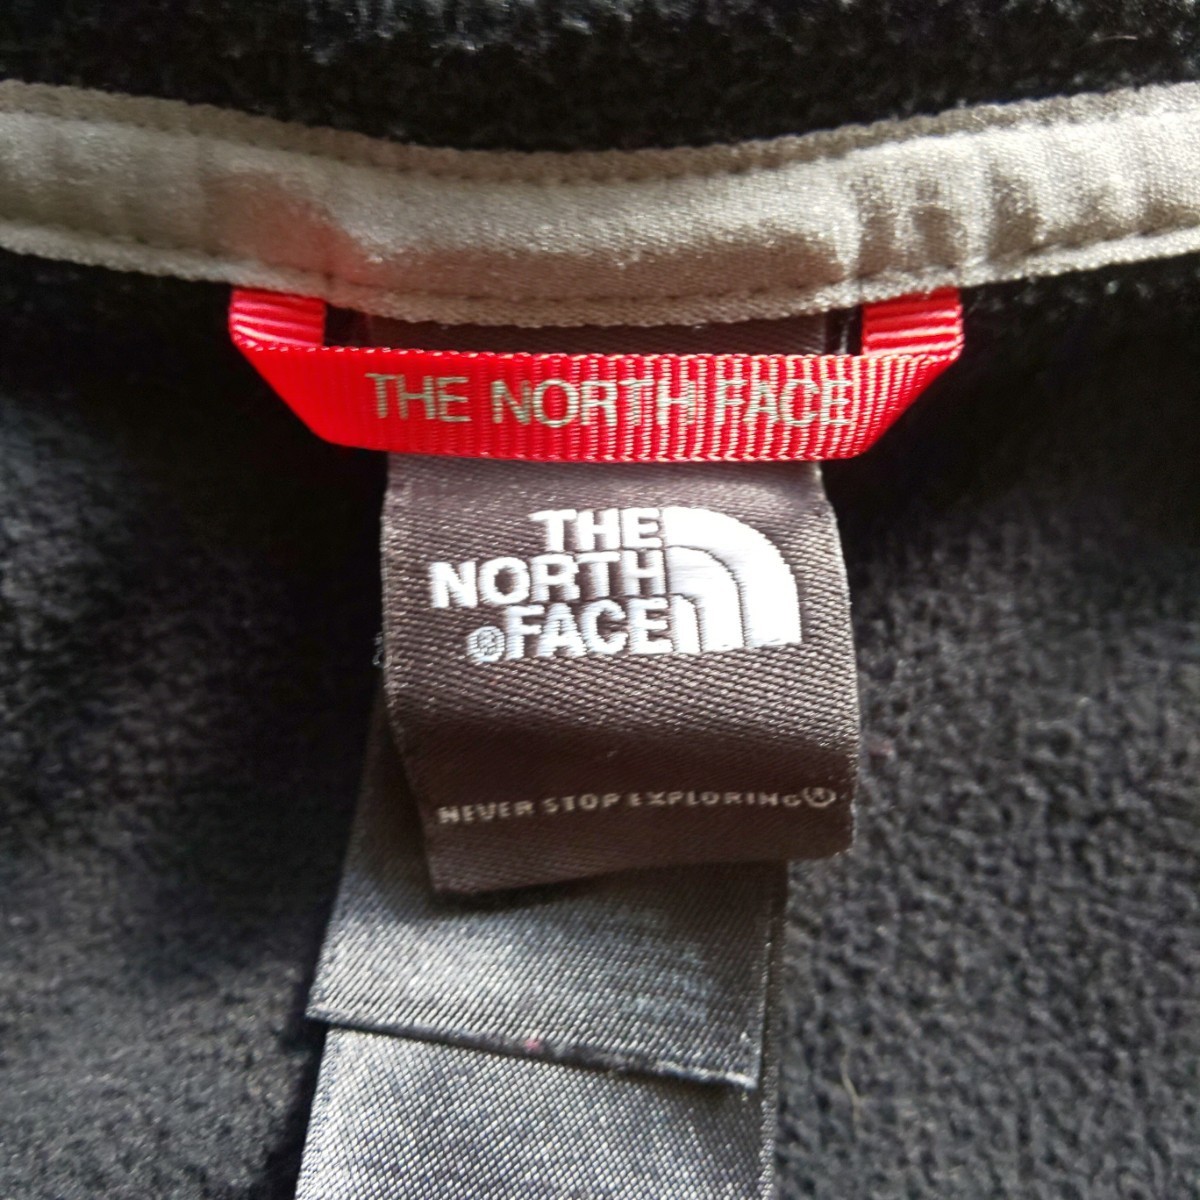 [ бесплатная доставка ]THE NORTH FACEl The North Face полный Zip флис Parker женский S размер 